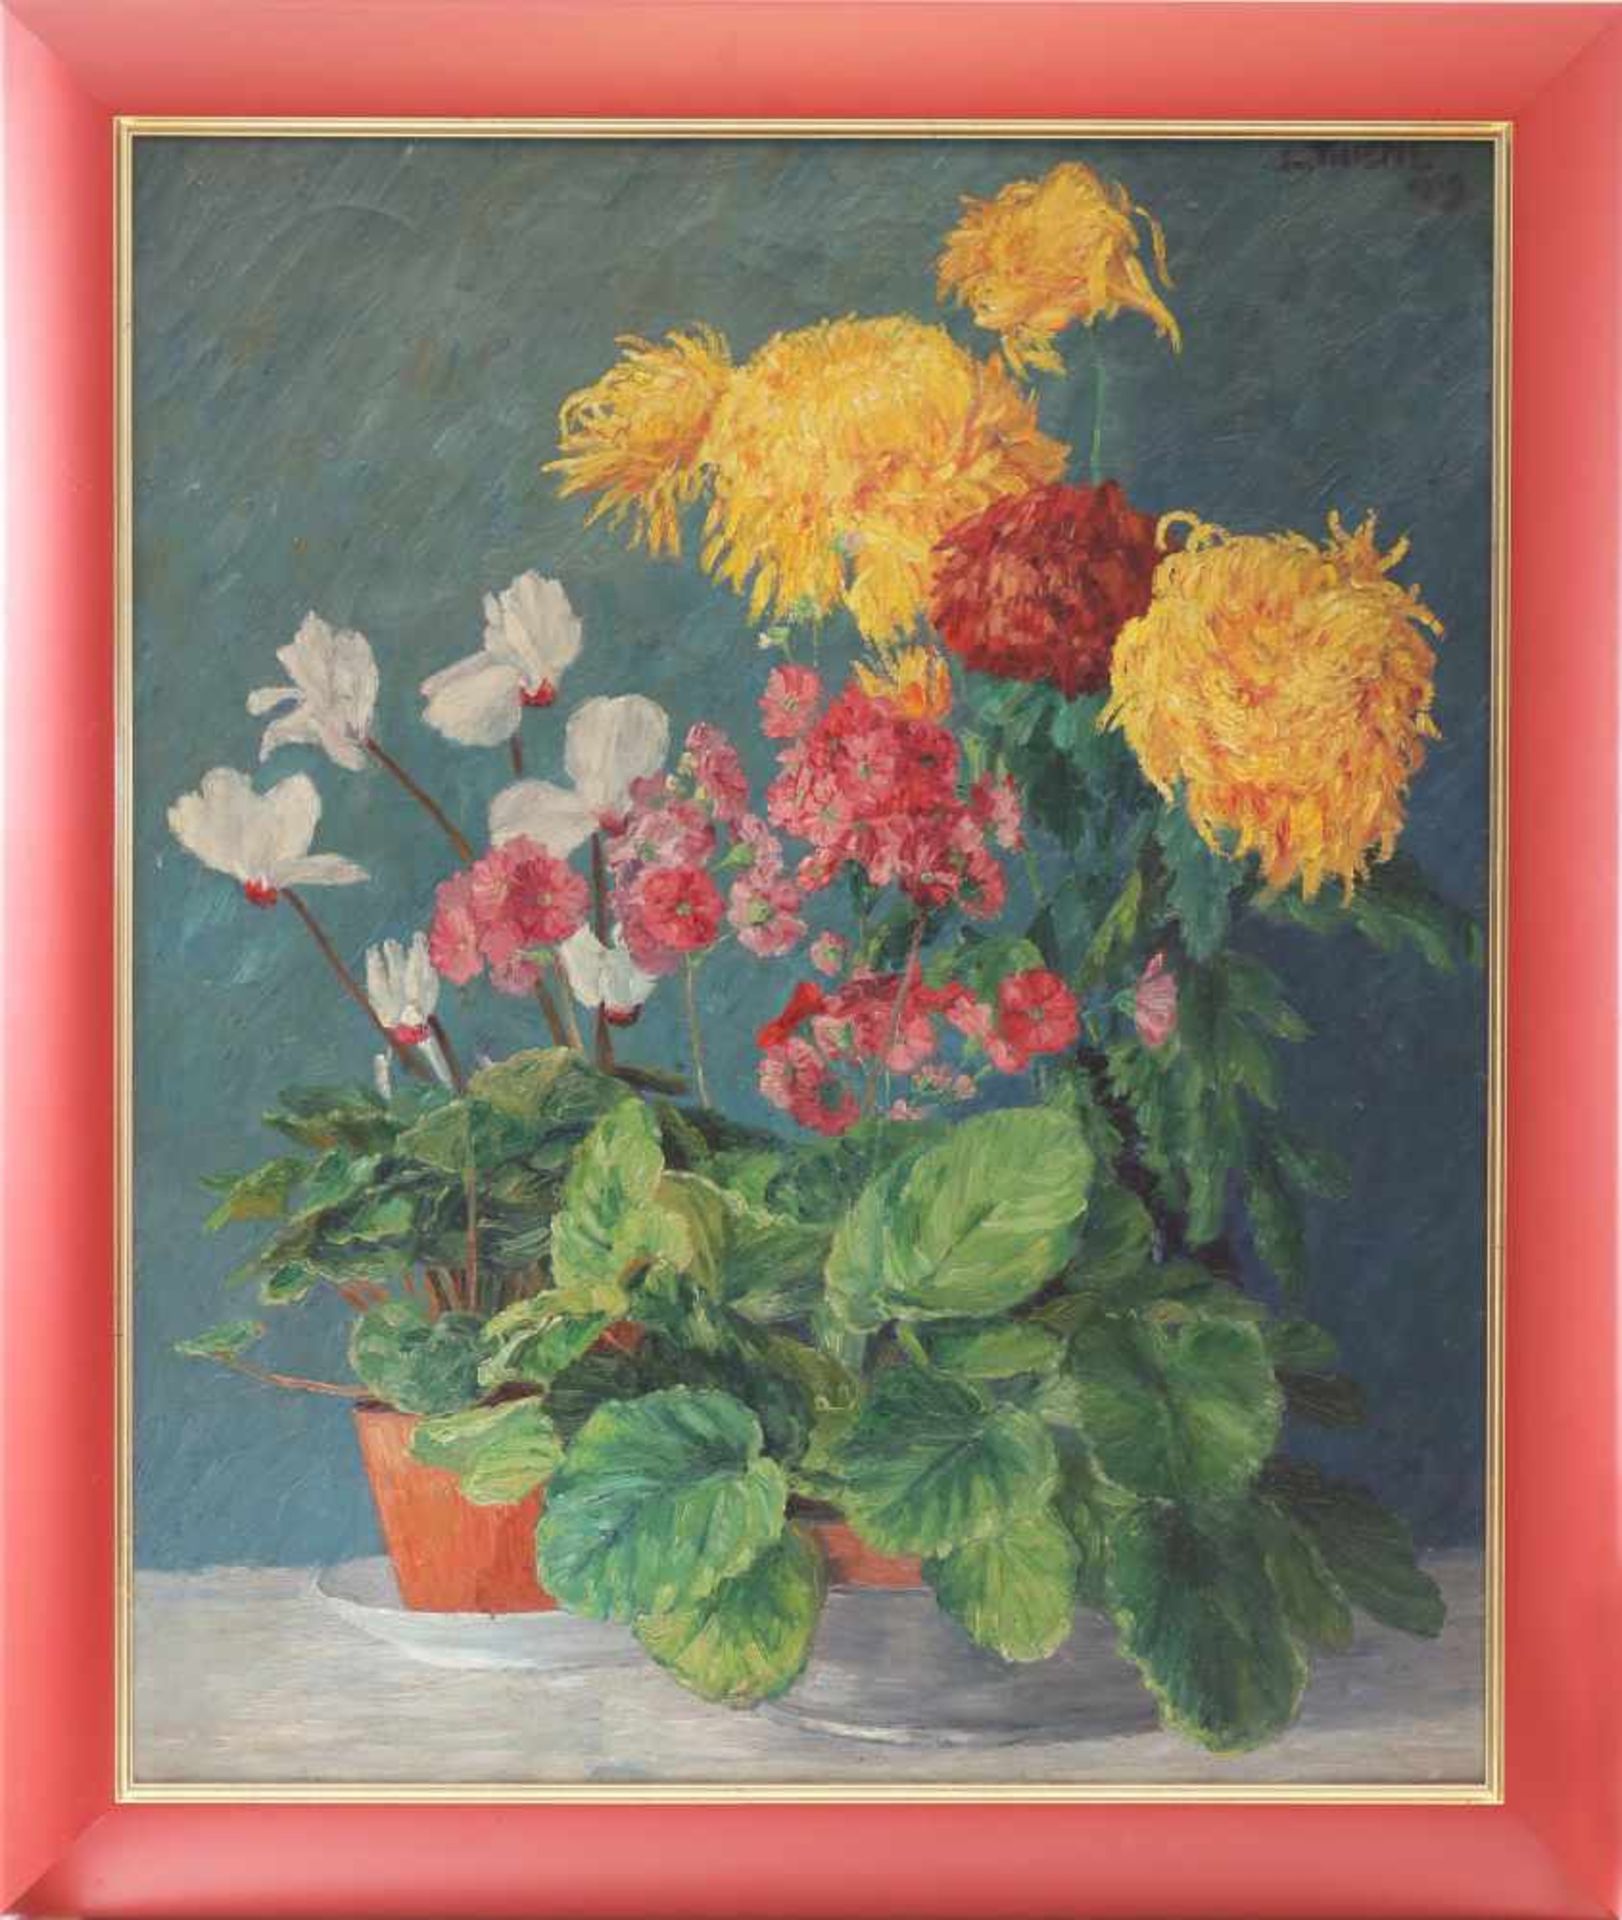 LEOPOLD THIEME (1880 Rochlitz-1963 Lübeck)Öl auf Leinwand, ¨Blumenstilleben mit Chrysanthemen¨, oben